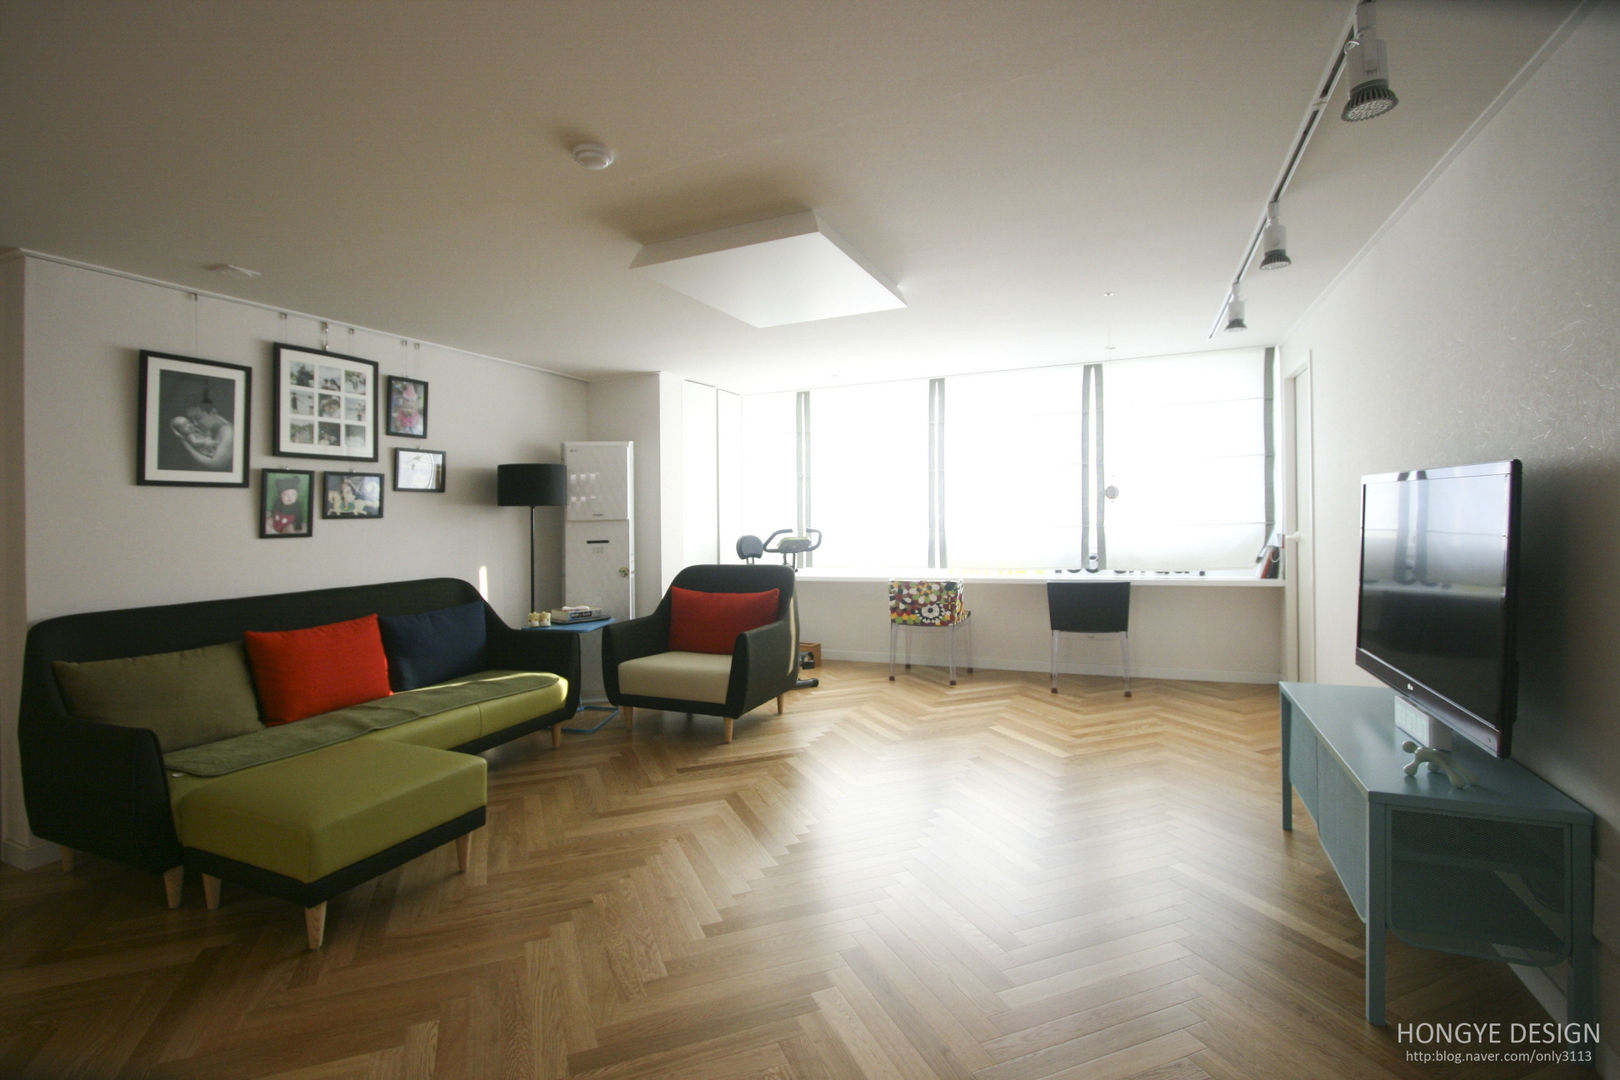 파스텔톤의 따뜻한 신혼집 _ 33py, 홍예디자인 홍예디자인 Living room